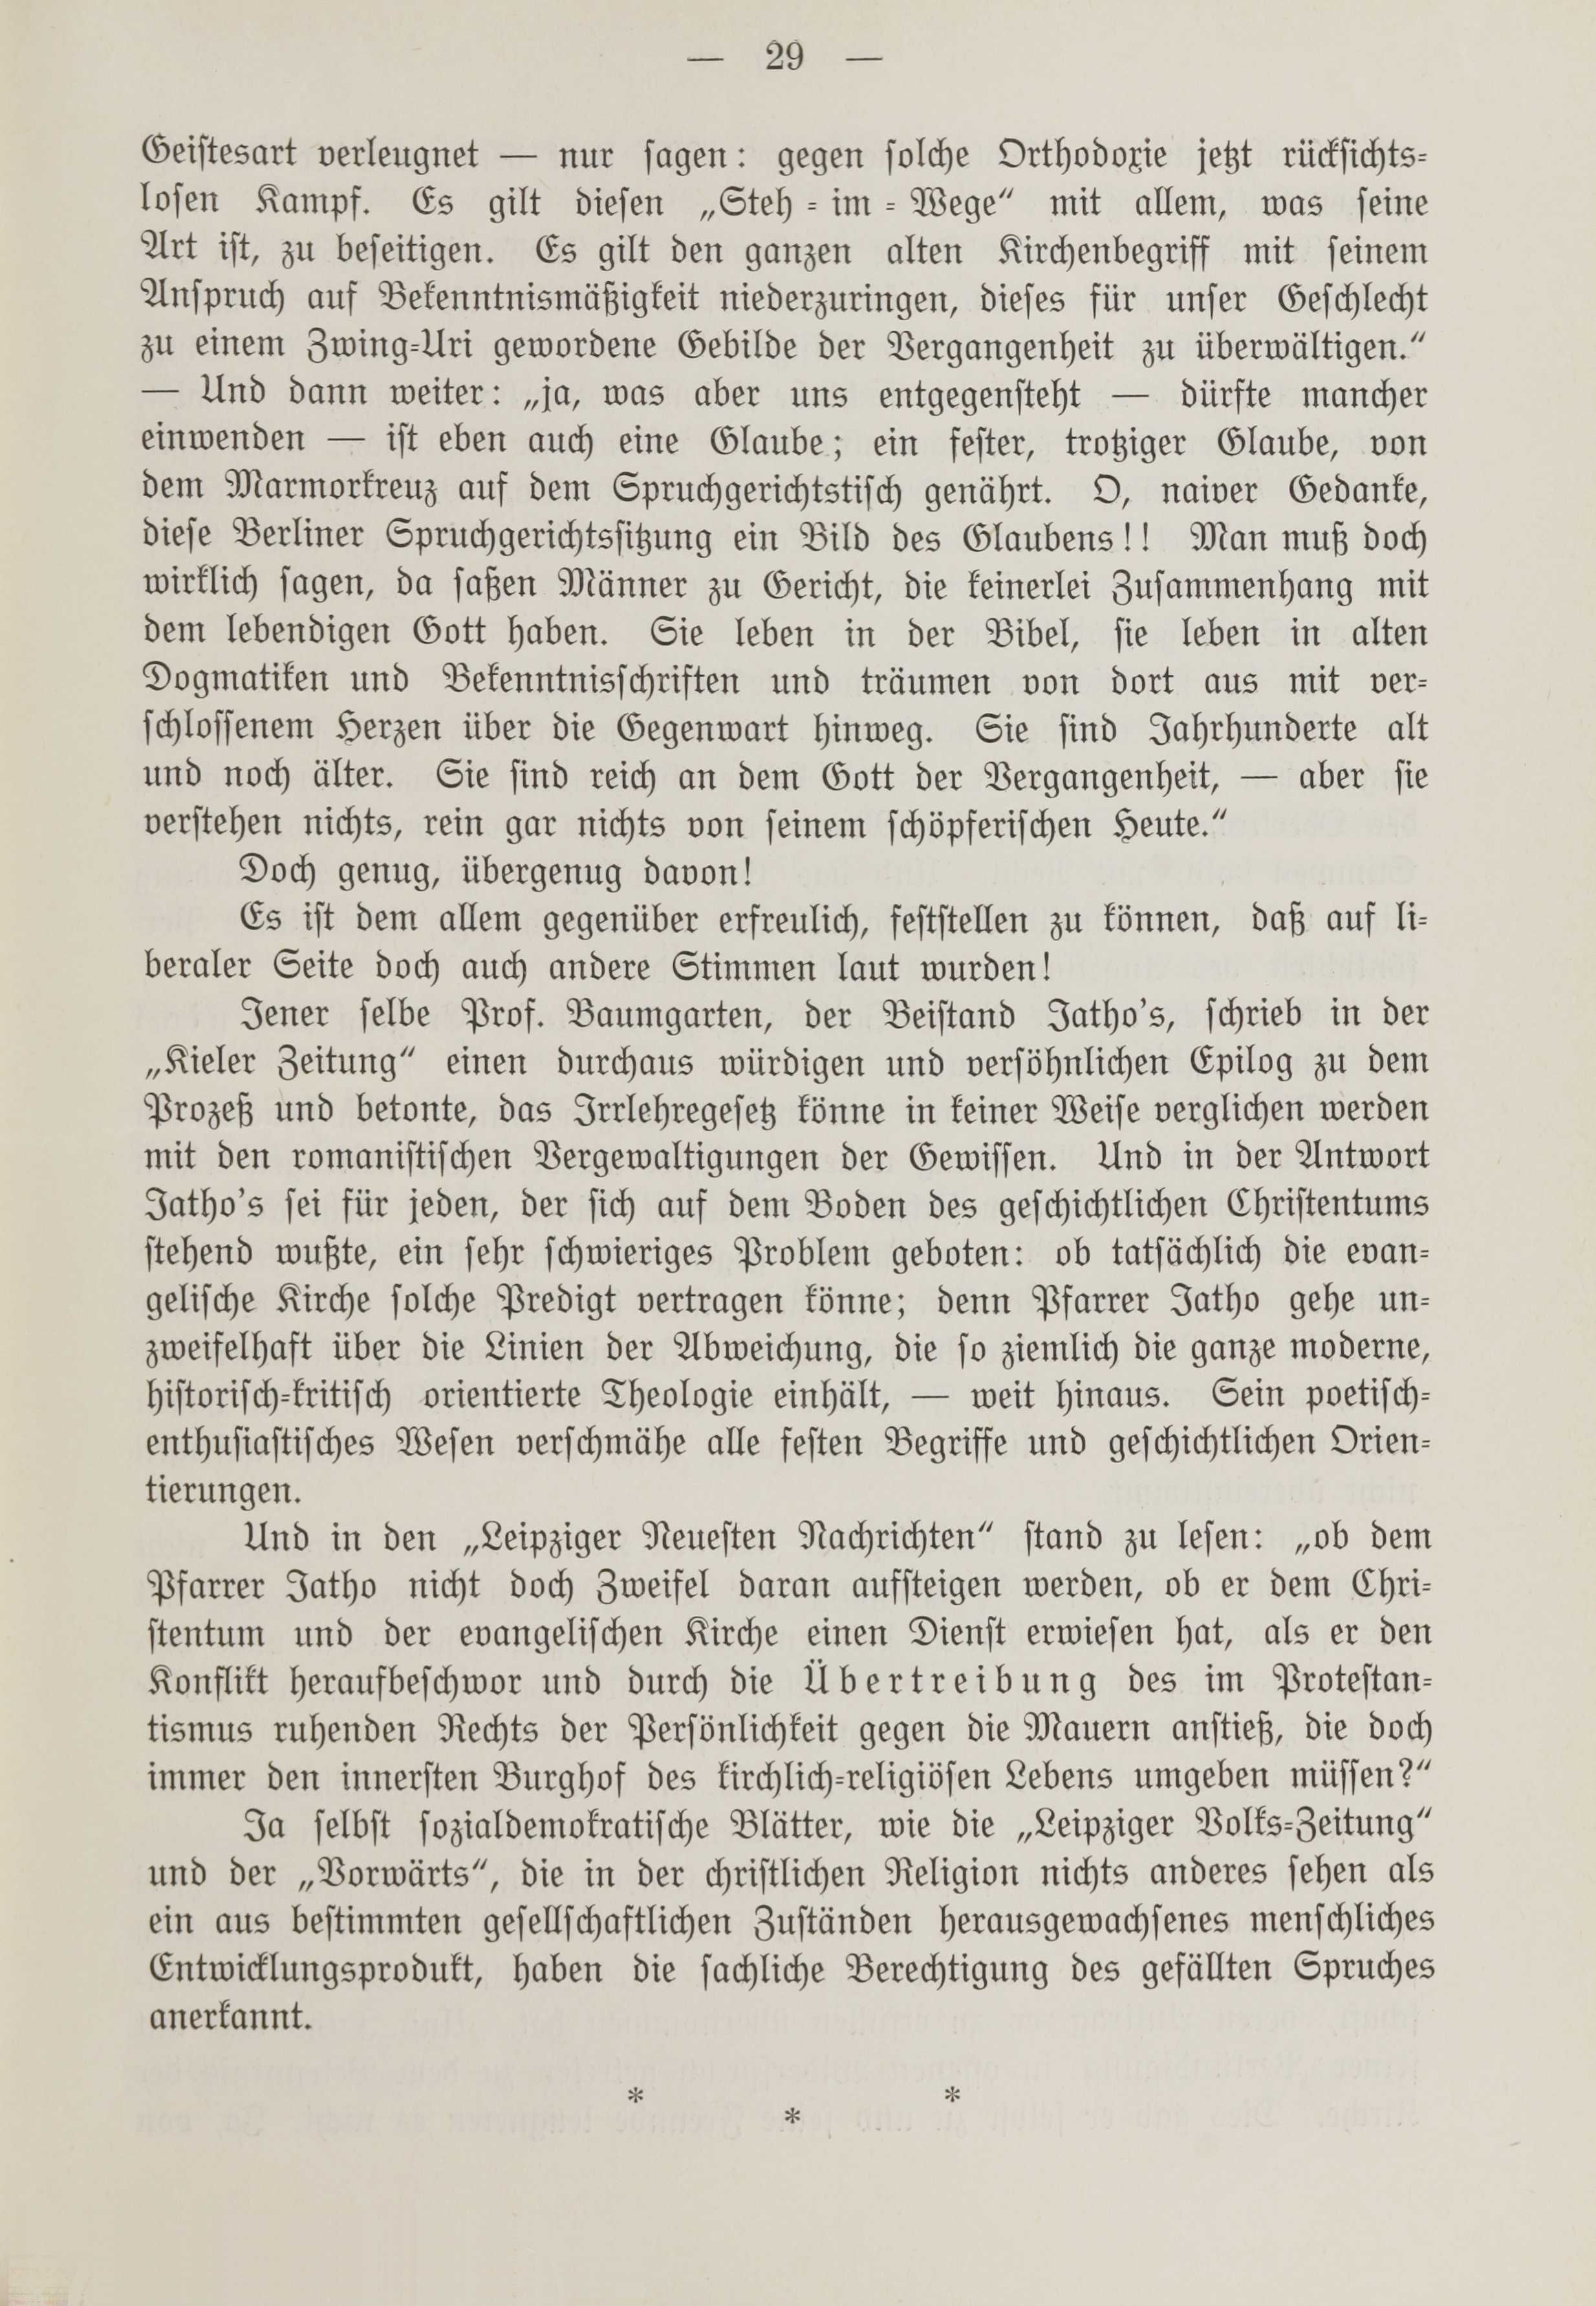 Deutsche Monatsschrift für Russland [1] (1912) | 36. (29) Haupttext